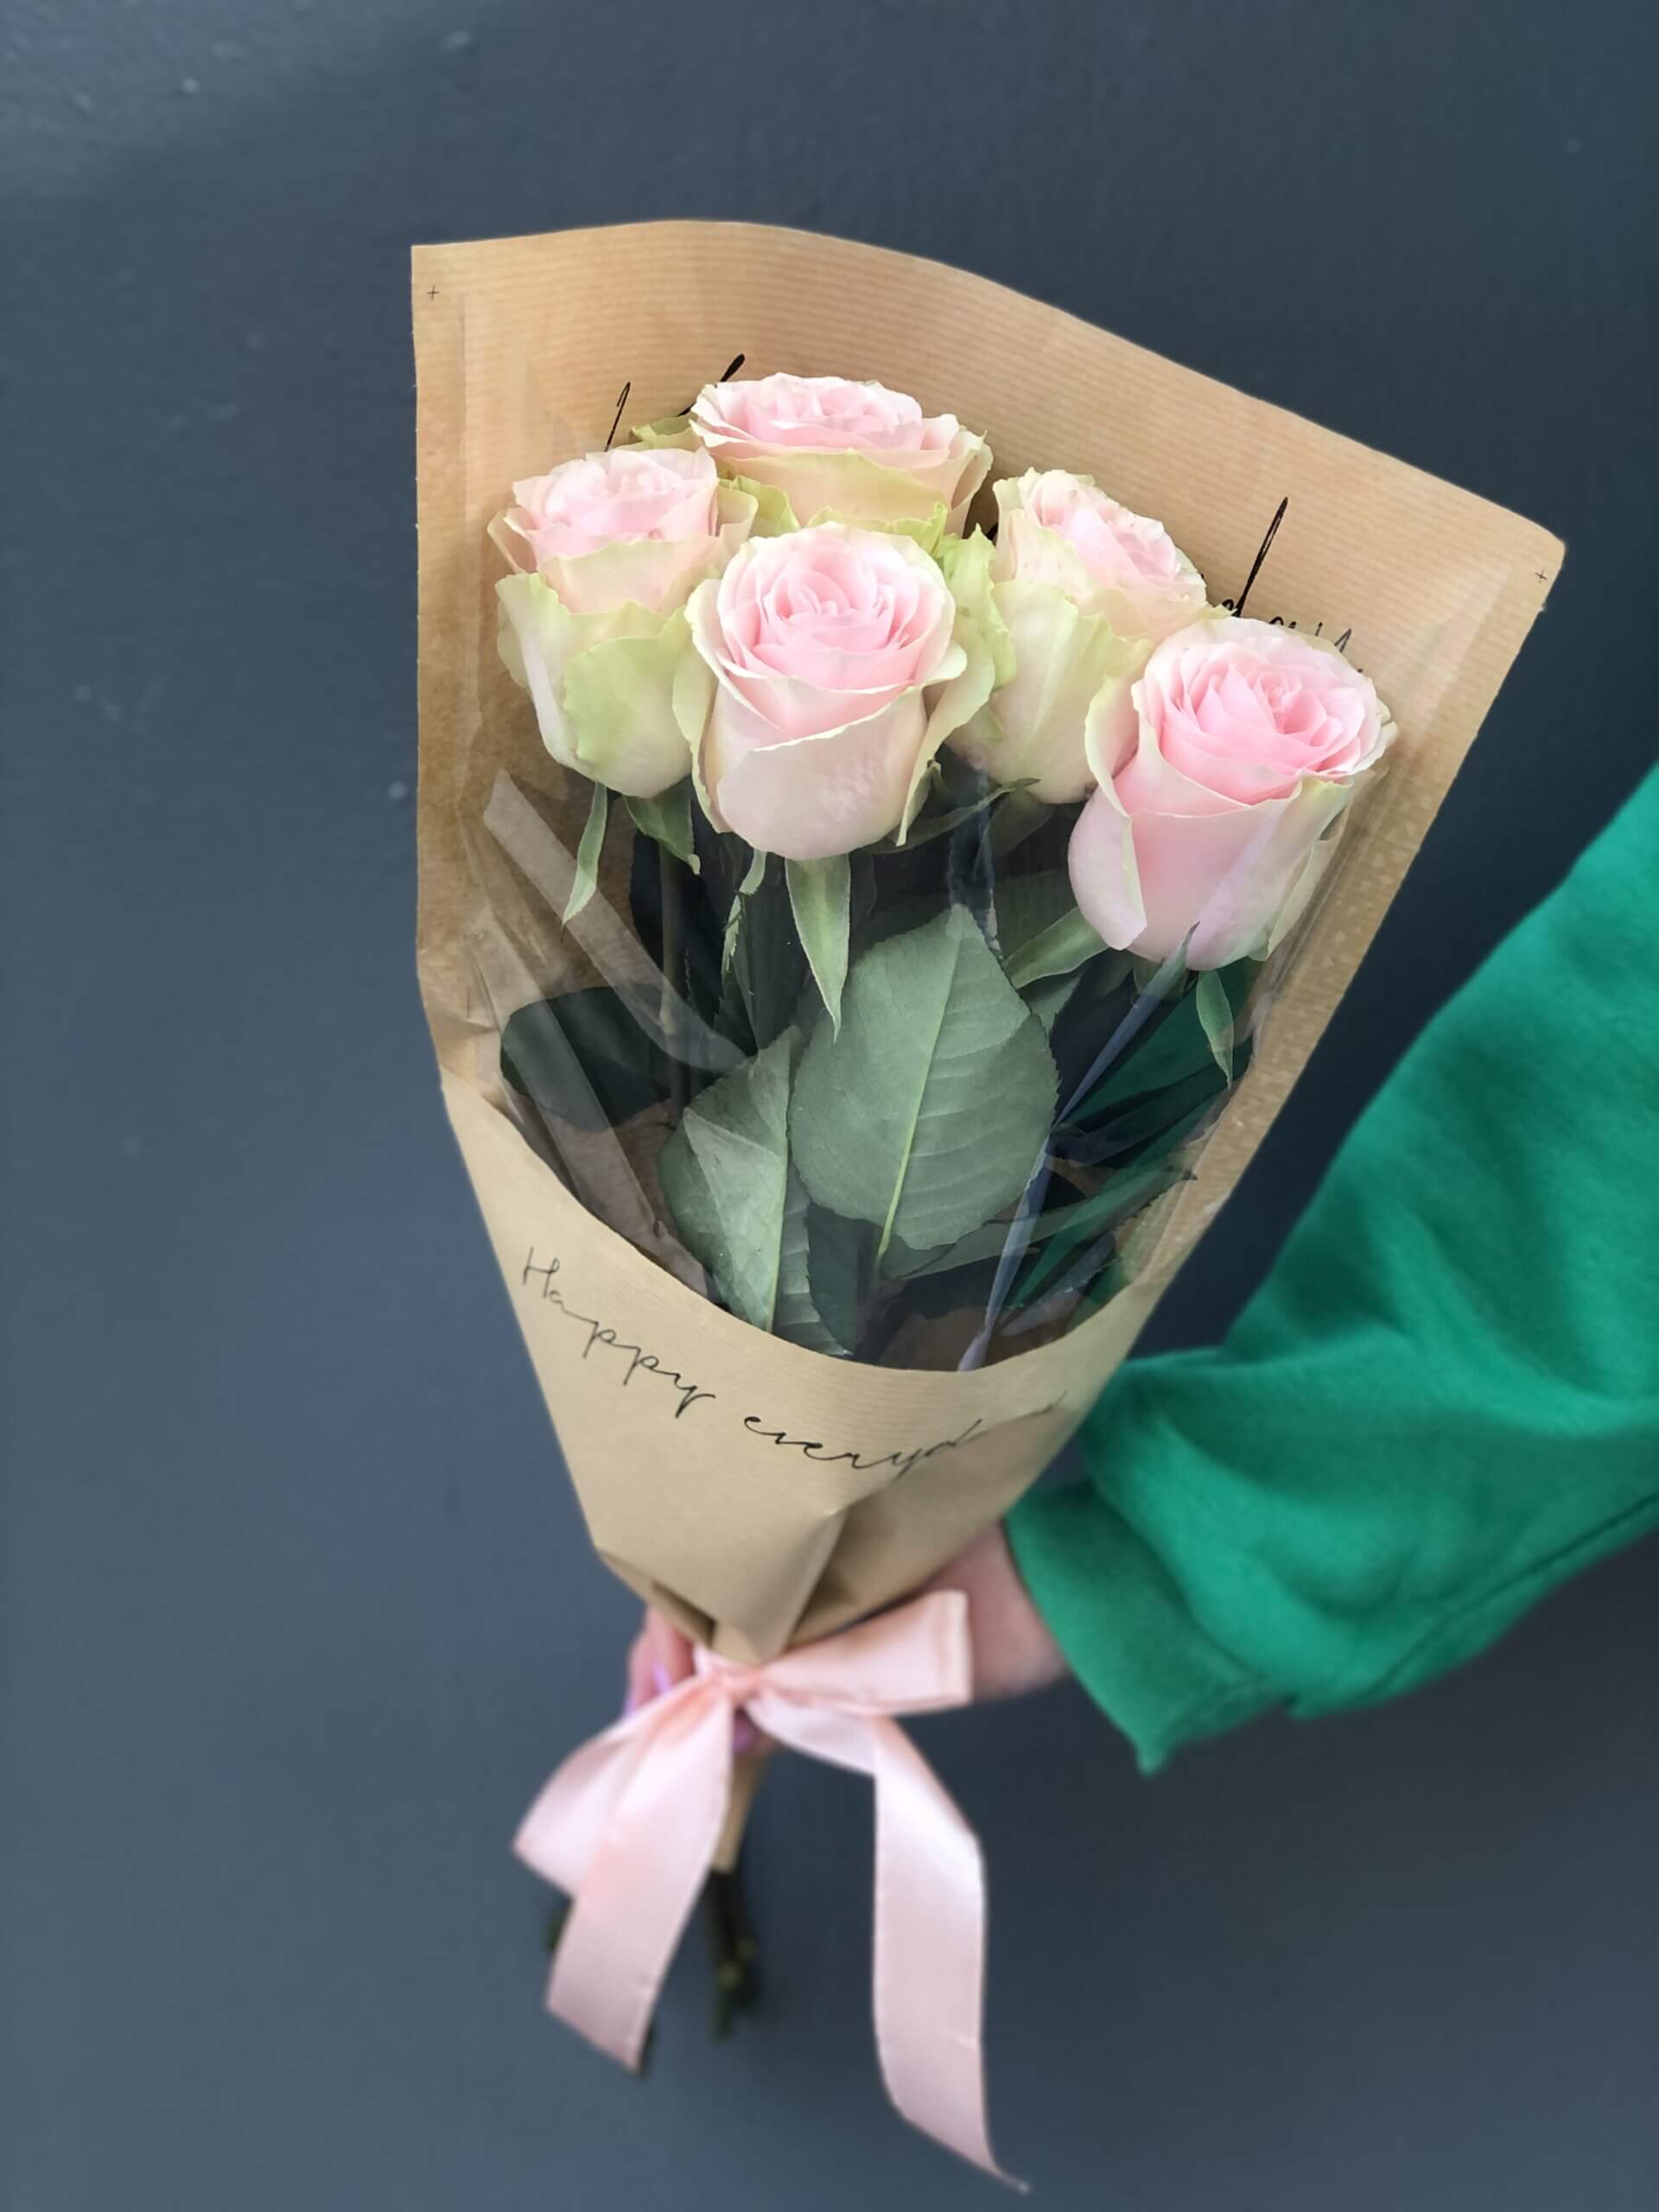 Букет из 5 розовых роз 50см в прозрачной упаковке купить в Твери по цене1000 рублей